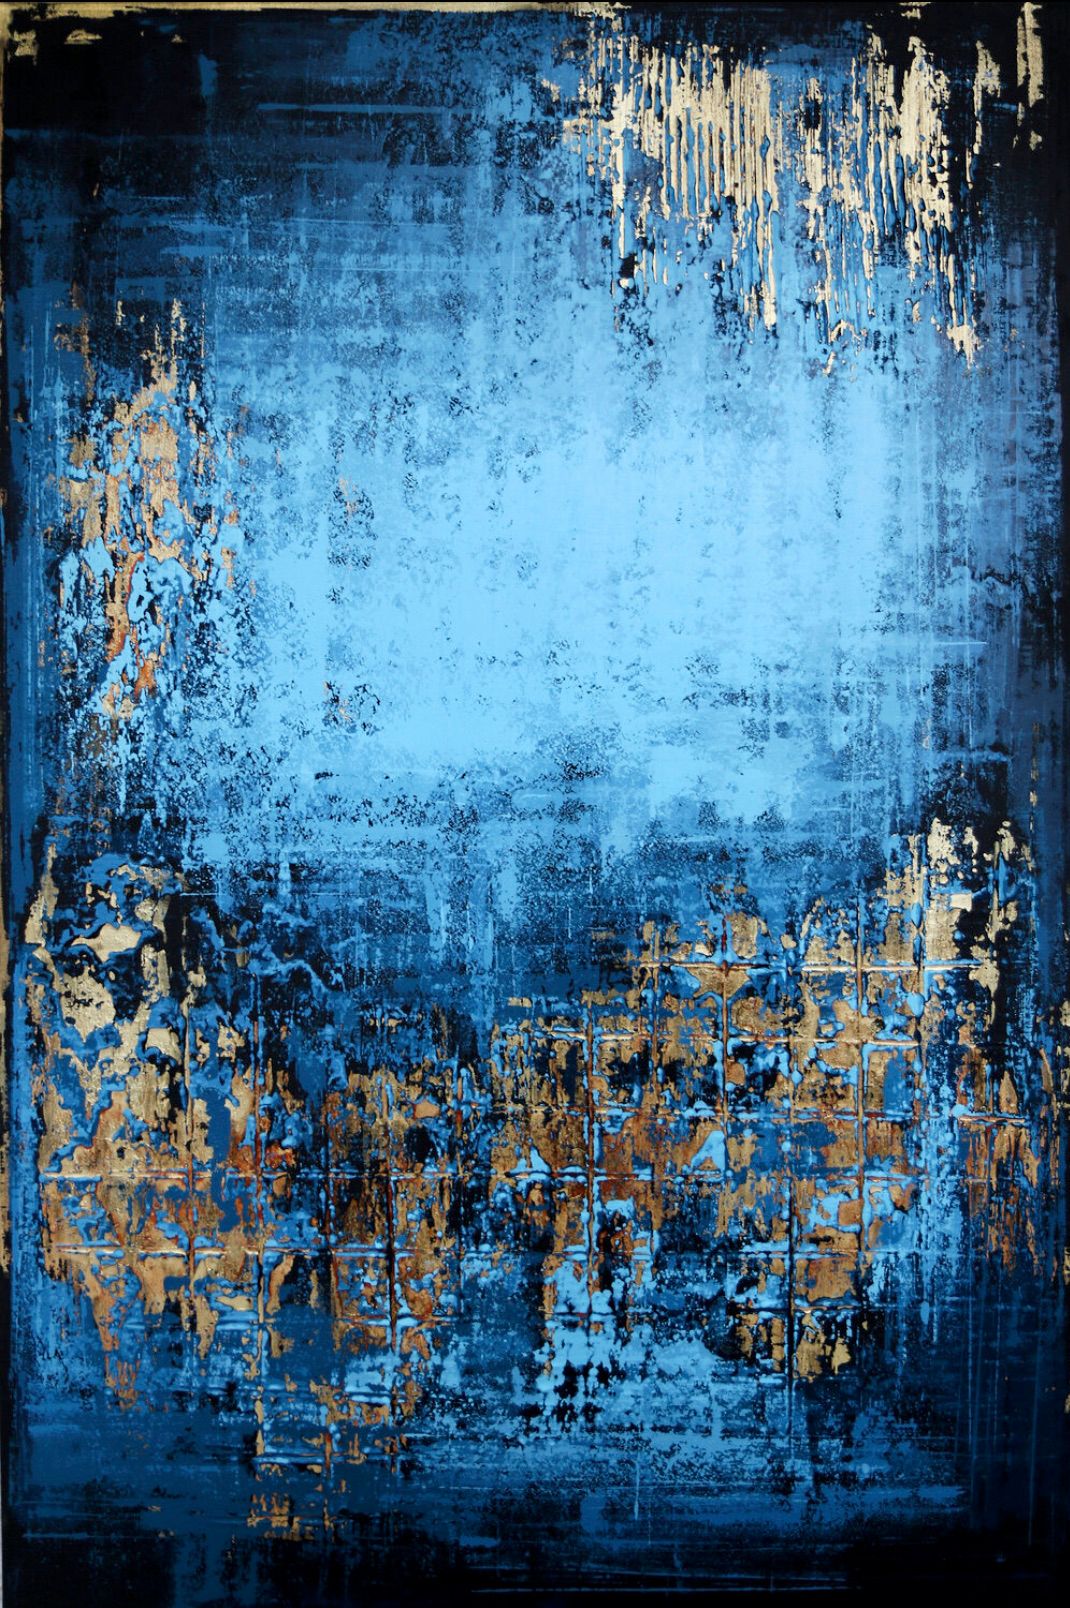 In Inez Froehlich's "MIDSUMMER NIGHT" abstraktes Gemälde dominieren die Farben, Kupfer, Gold, Blau, Blau und Blau. Der Stil des Gemäldes ist Shabby chic, Industriestil, Vintage, Retro, Boho, rustikal.